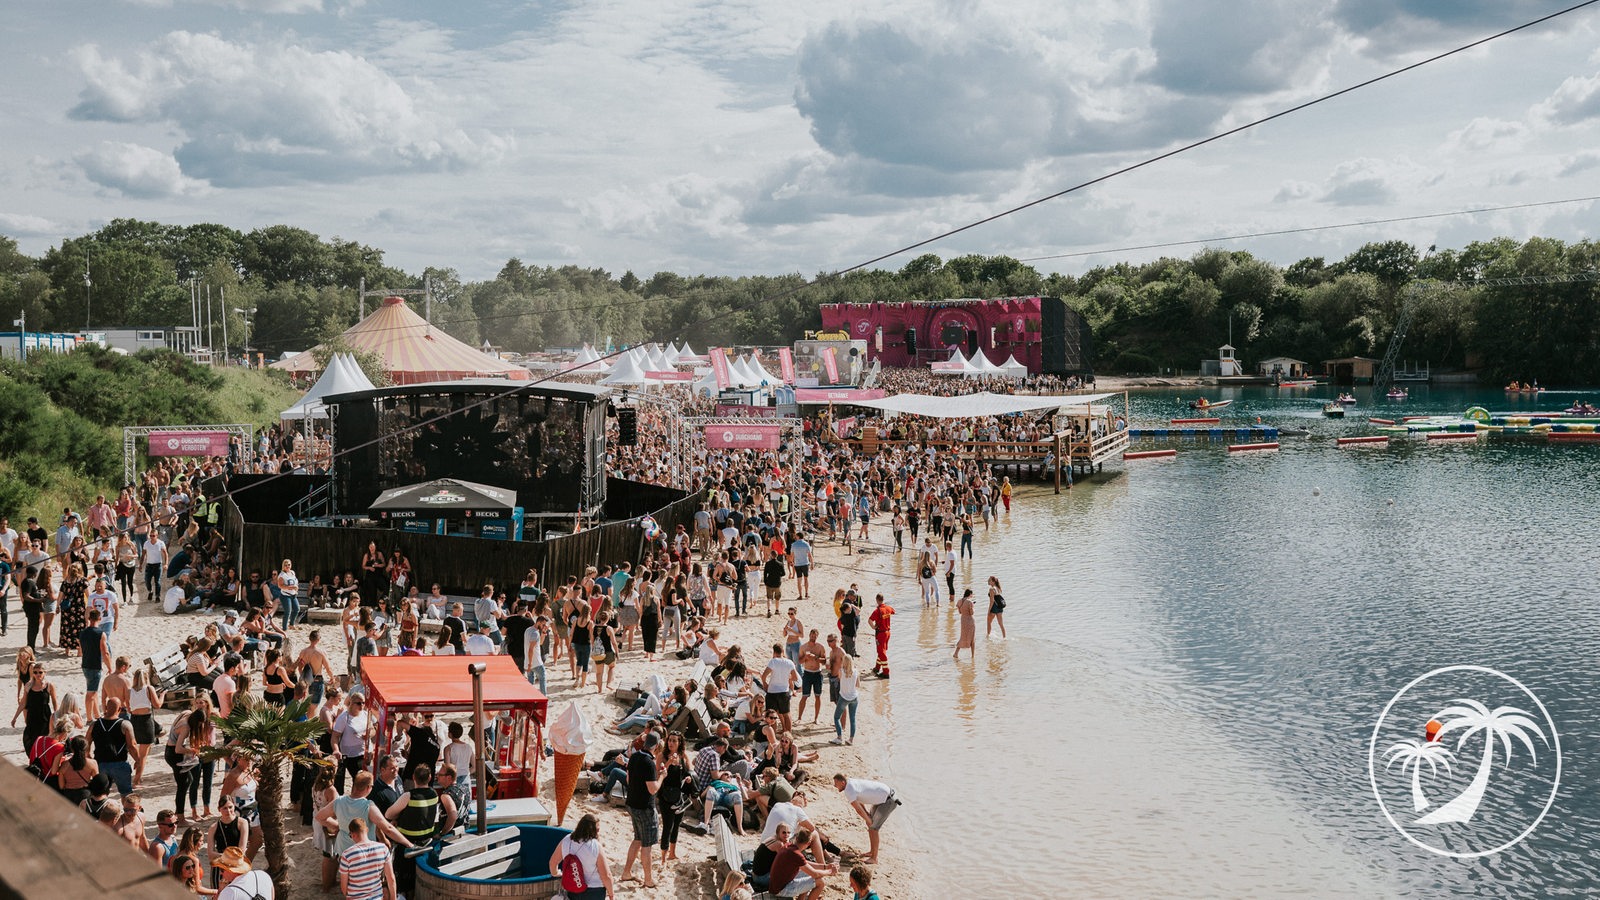 Das Bild zeigt ein Open-Air Festival mit einem Strand auf dem links eine Festivalbühne aufgebaut ist. Davor sammeln sich viele Menschen, die feiern. Rechts geht der Strand ins Wasser über, im hinteren Bereich schwimmende Menschen. Im Hintergrund ist eine Baumreihe am Horizont zu erkennen, davor eine weitere Bühne.